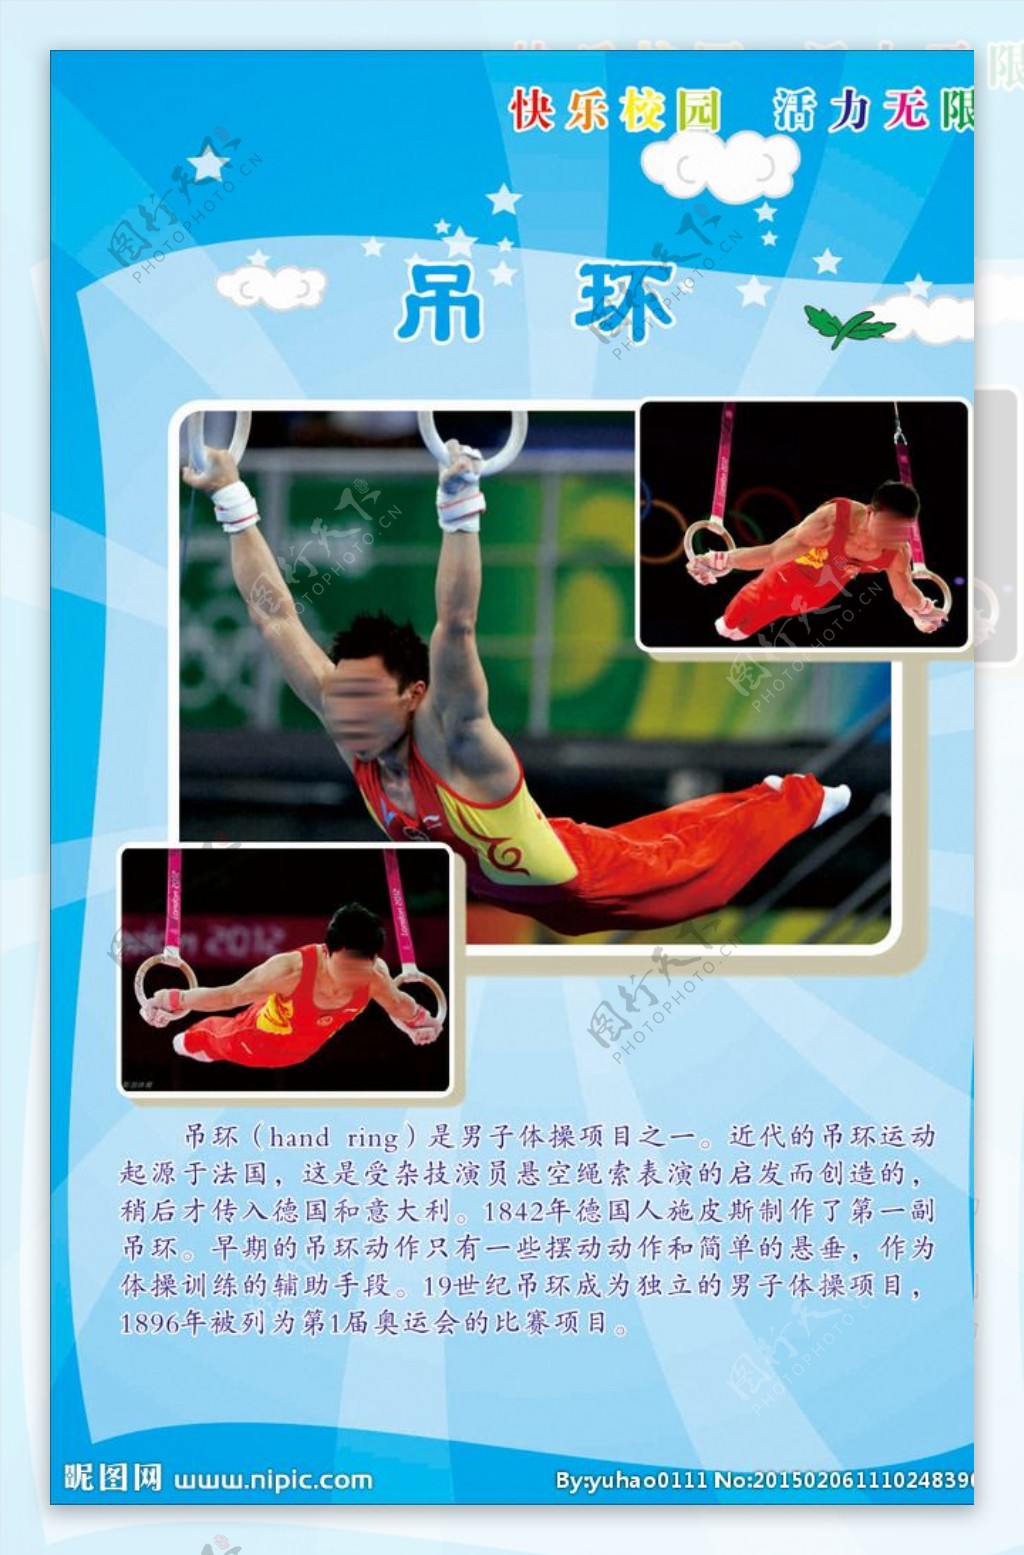 体操项目之吊环图片